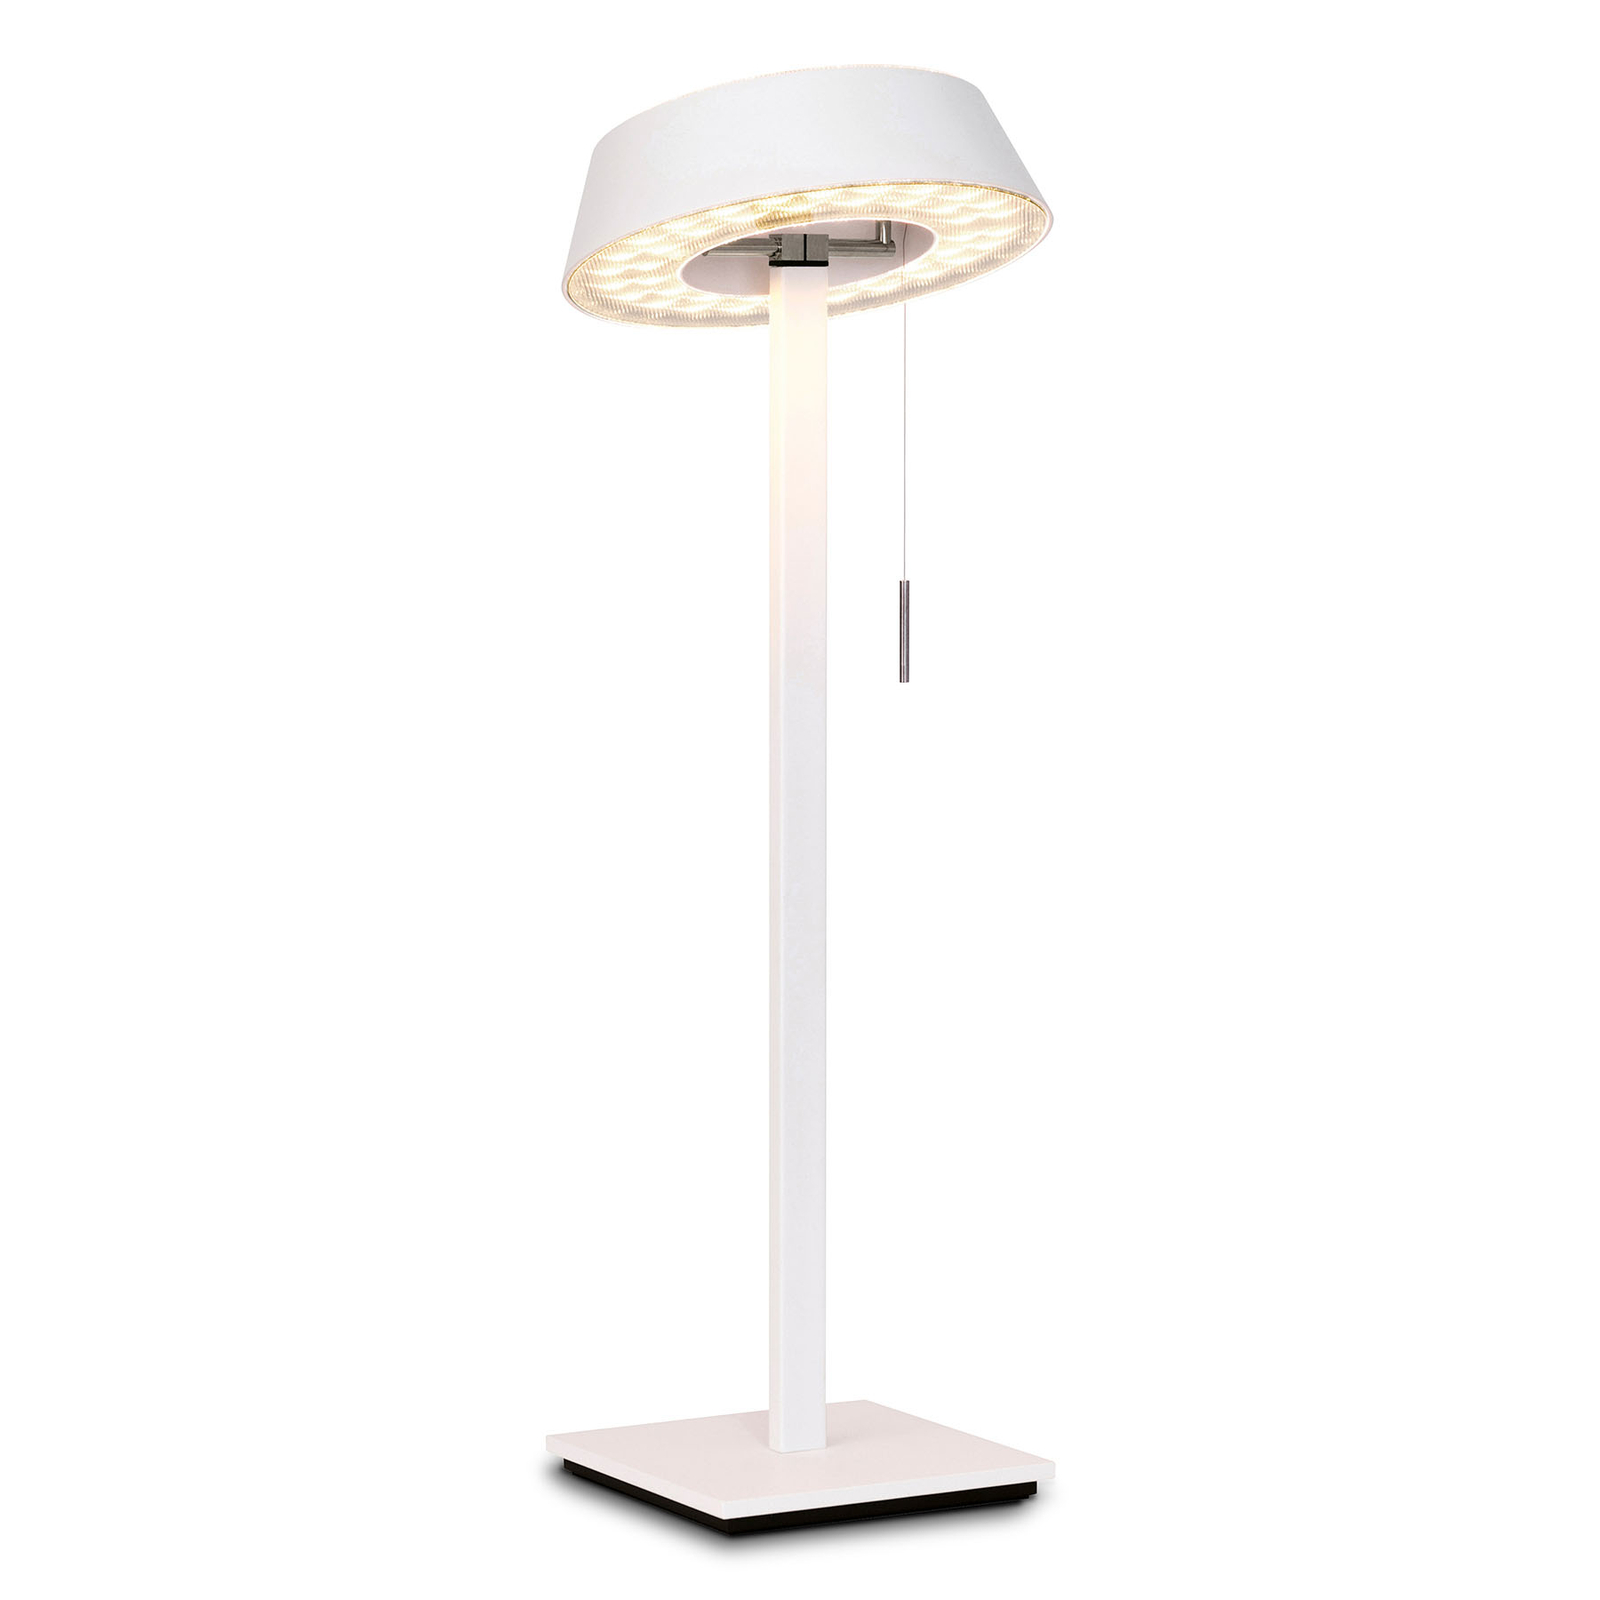 OLIGO Glance LED asztali lámpa fehér matt